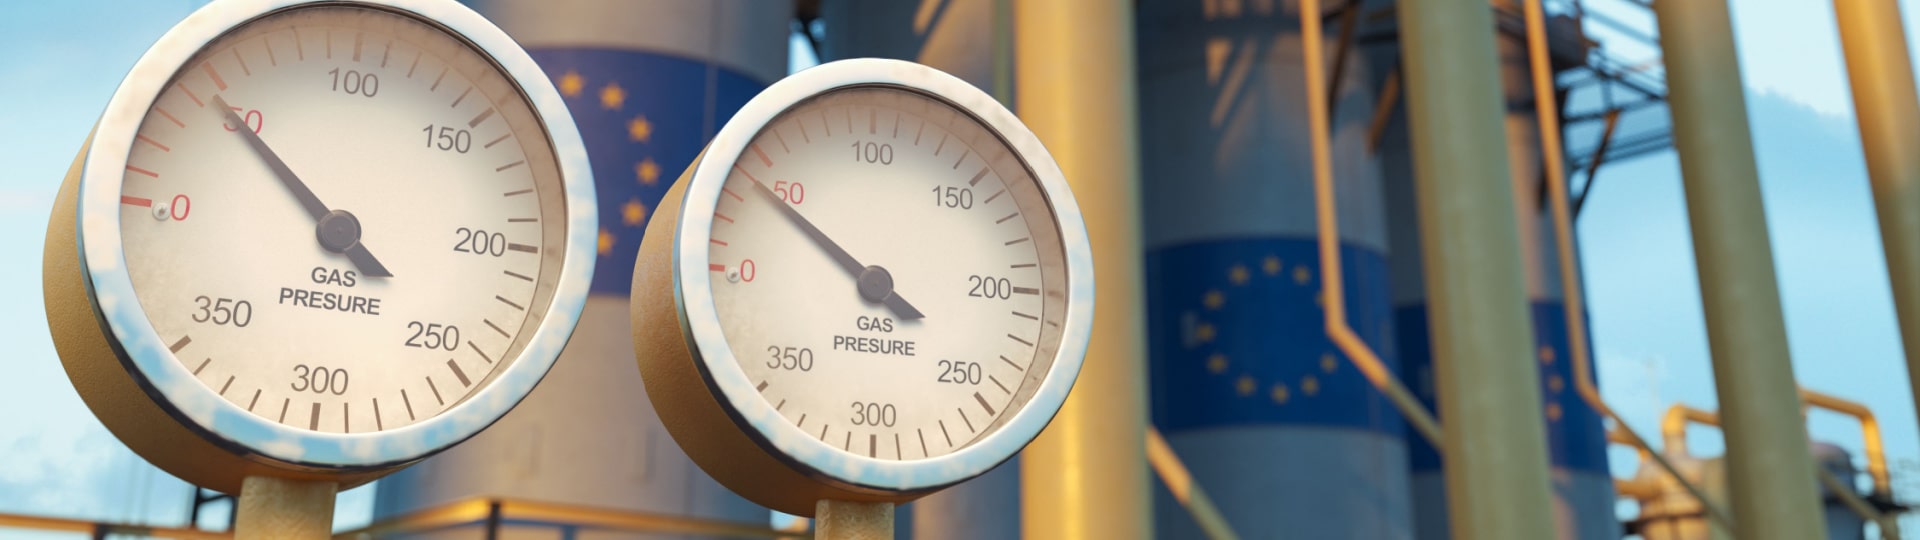 Evropa podle ruského Gazpromu nemá dost plynu a může čelit potížím